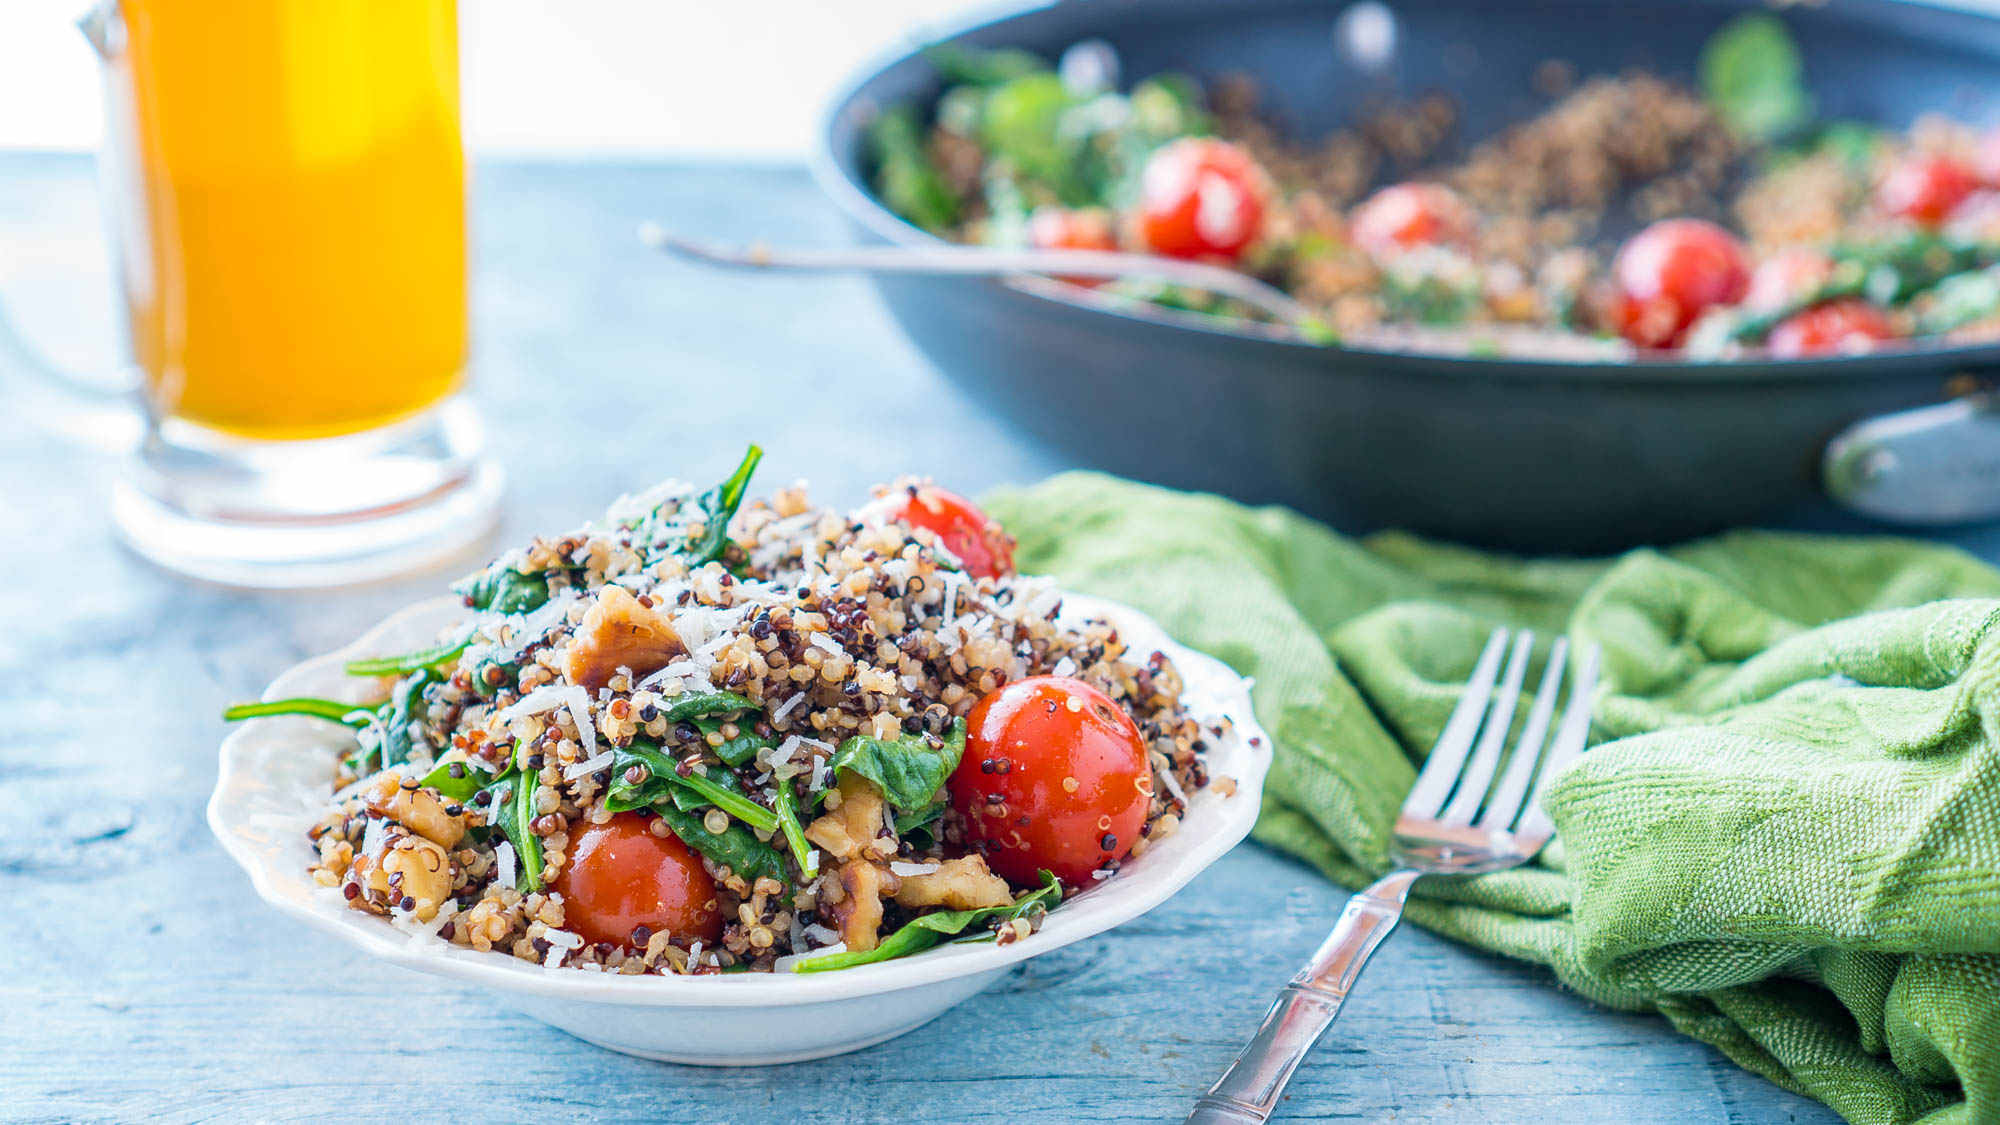 Best Quinoa Recipes | Healthy Quinoa Meal Ideas - Food.com